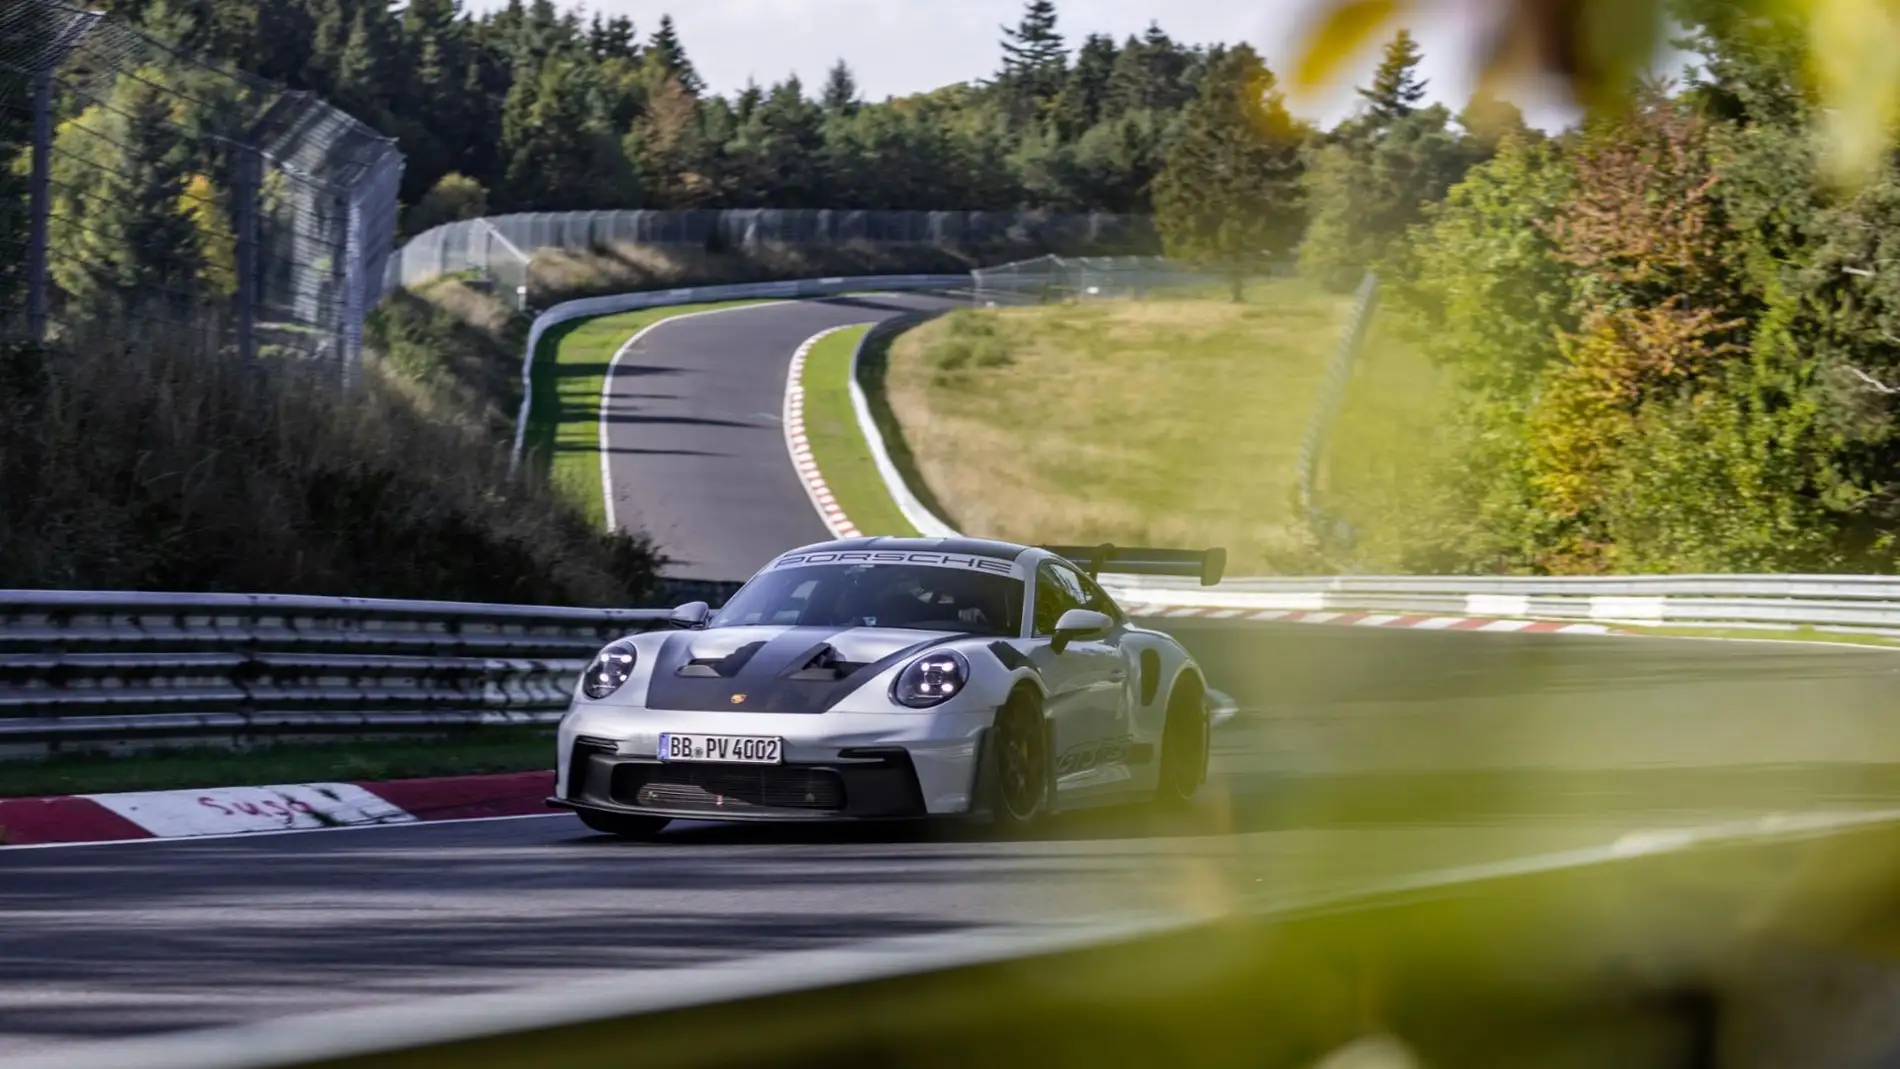 Con 200 CV menos, el Porsche 911 GT3 RS se queda a 1 segundo del coche más rápido en Nürburgring